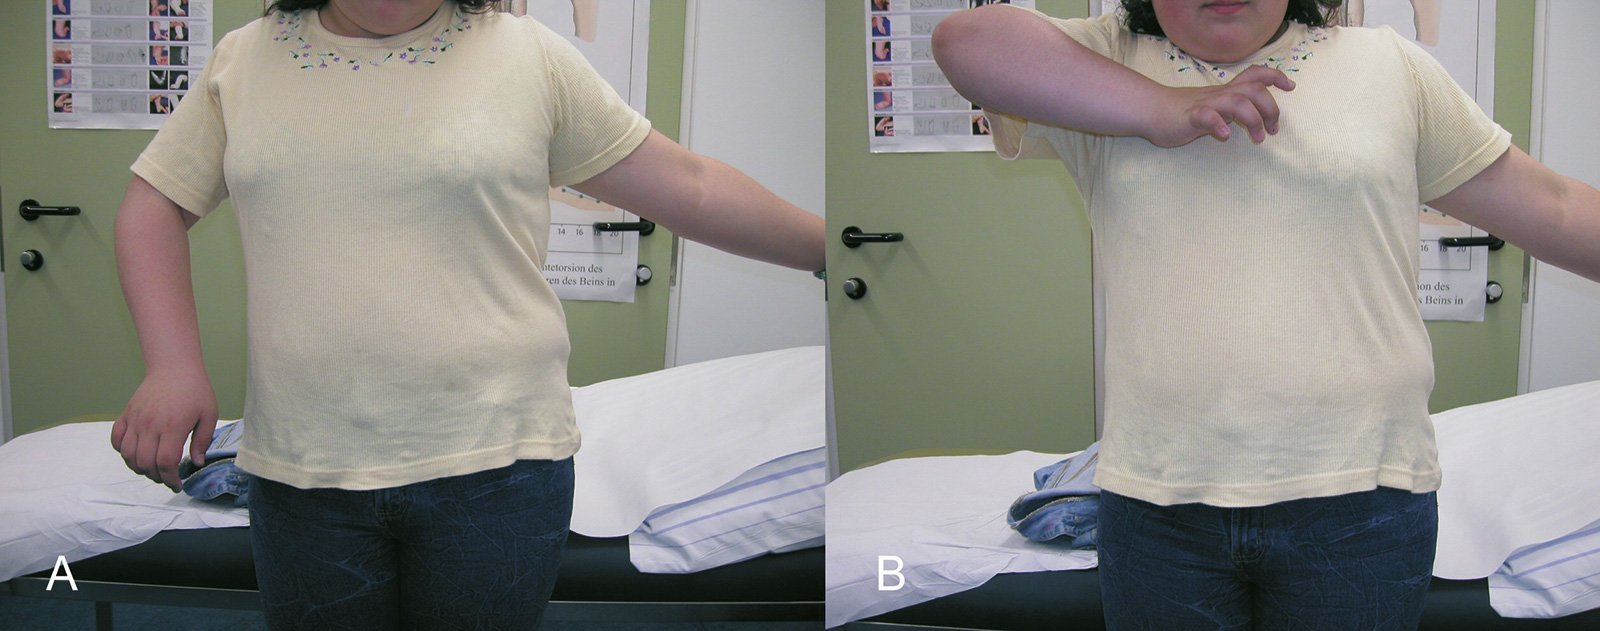 Abb. 4-68: Patientin mit einer Erbschen Lähmung. Der Arm wird in Innenrotation gehalten (A) und die Abduktion ist eingeschränkt (B)